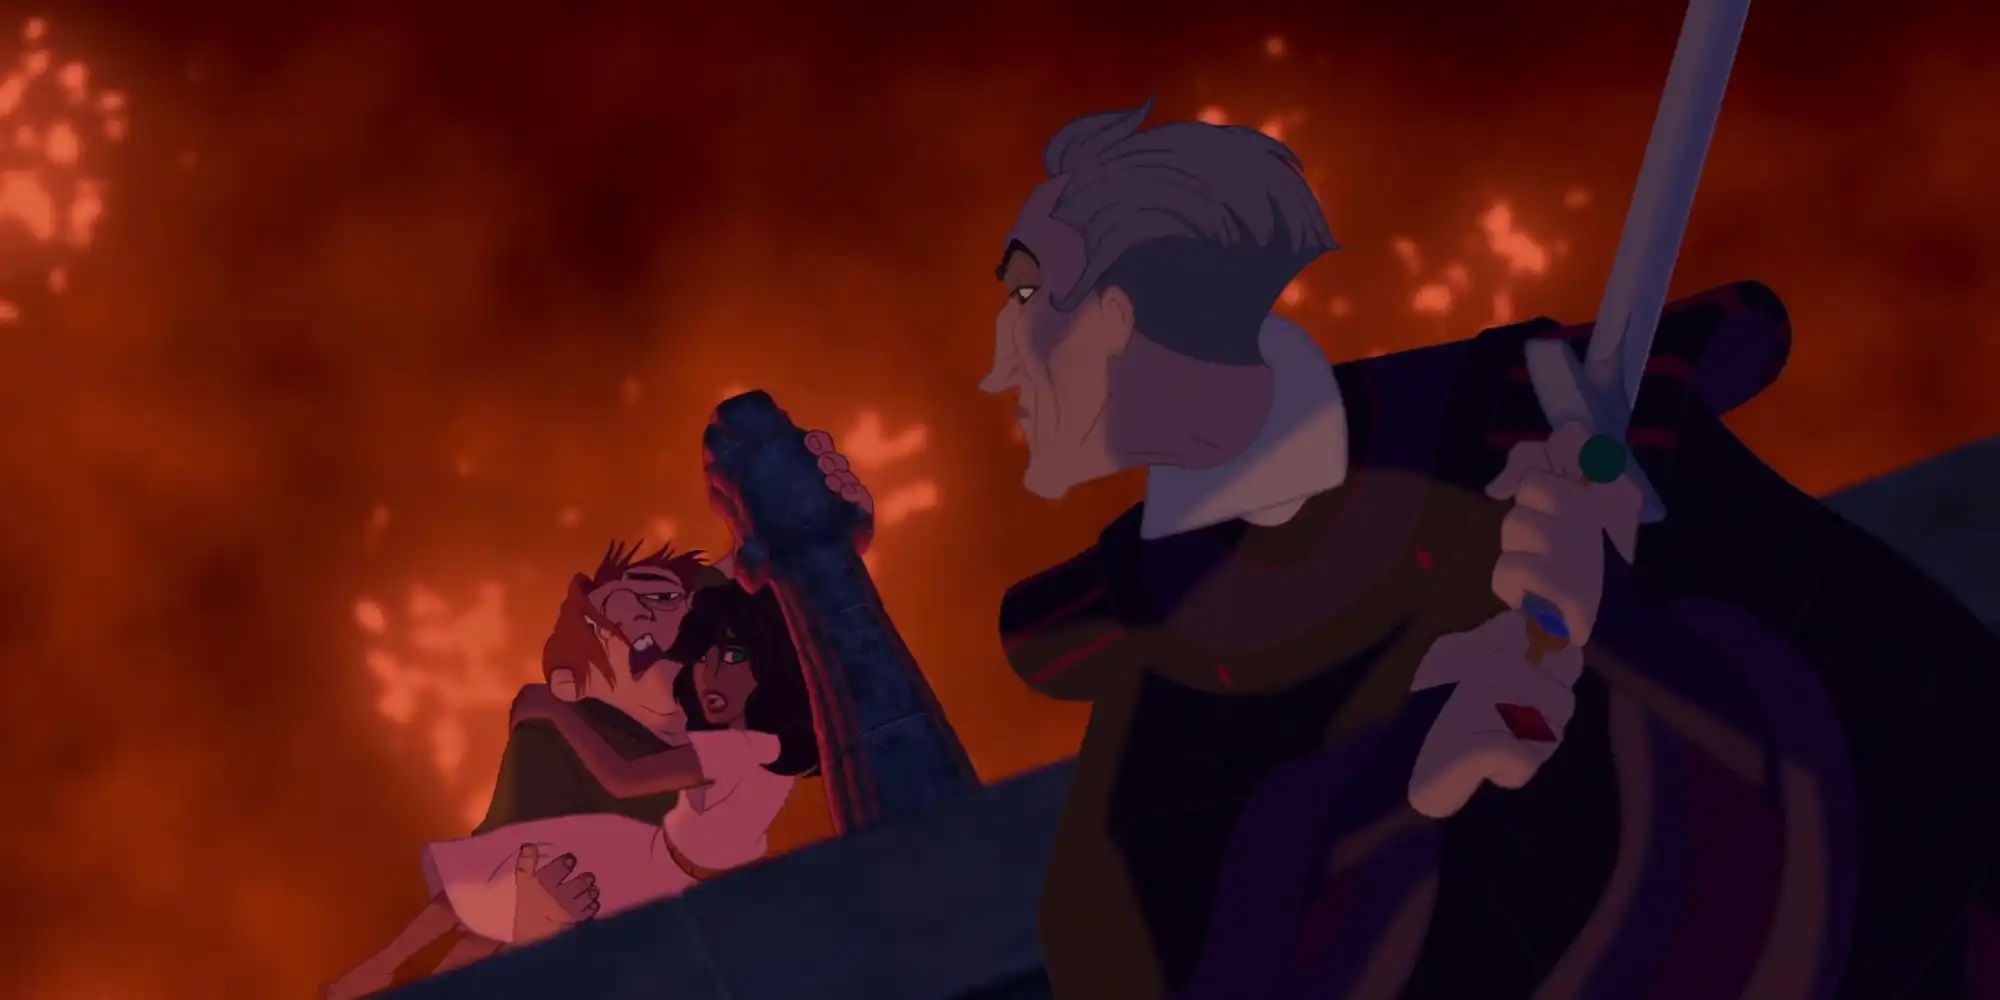 El juez Claud Frollo ataca a Quasimodo y Esmeralda mientras París arde